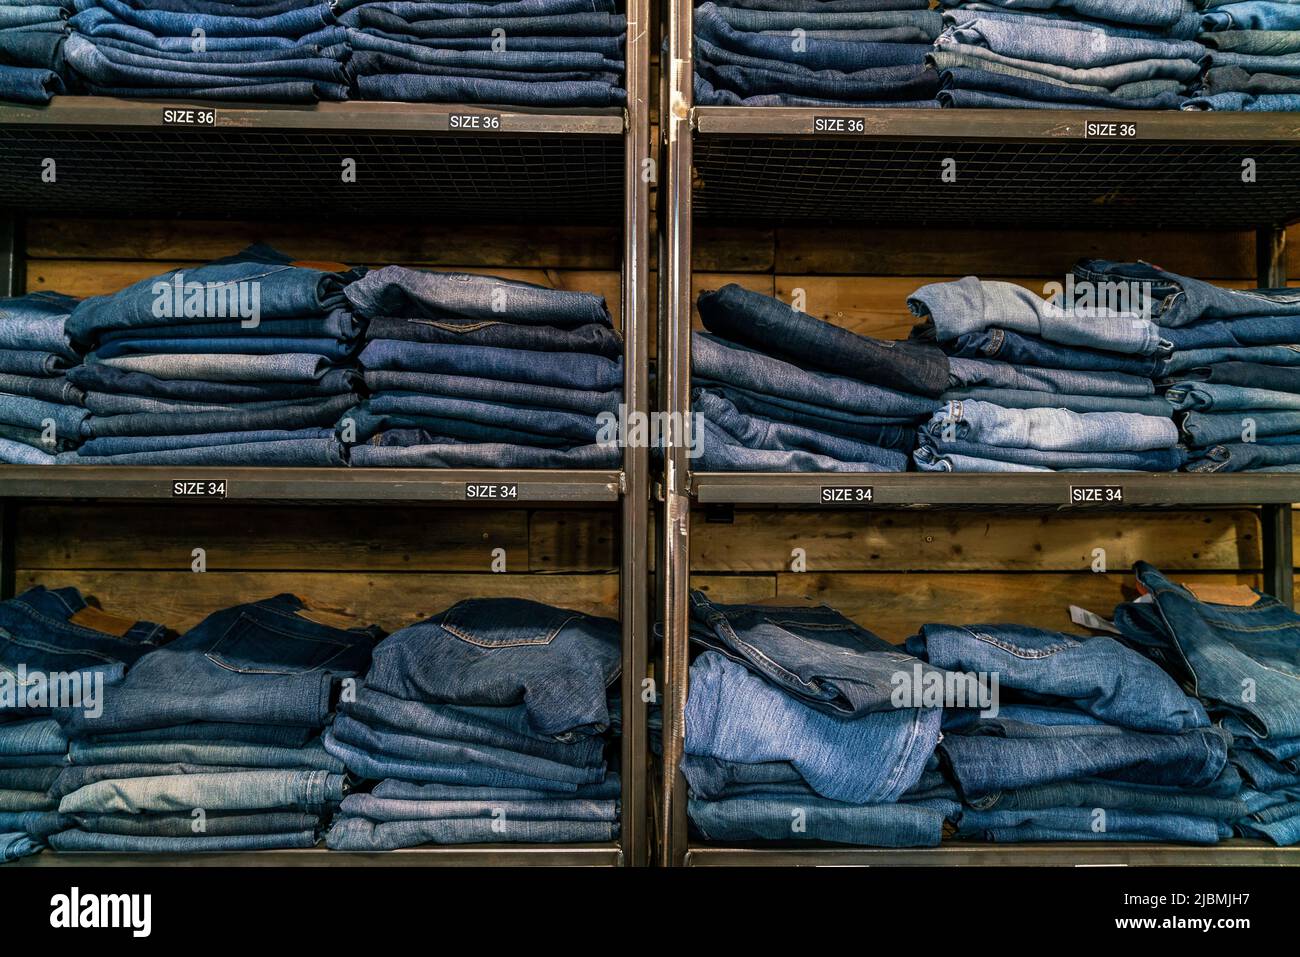 Jeans shop immagini e fotografie stock ad alta risoluzione - Alamy